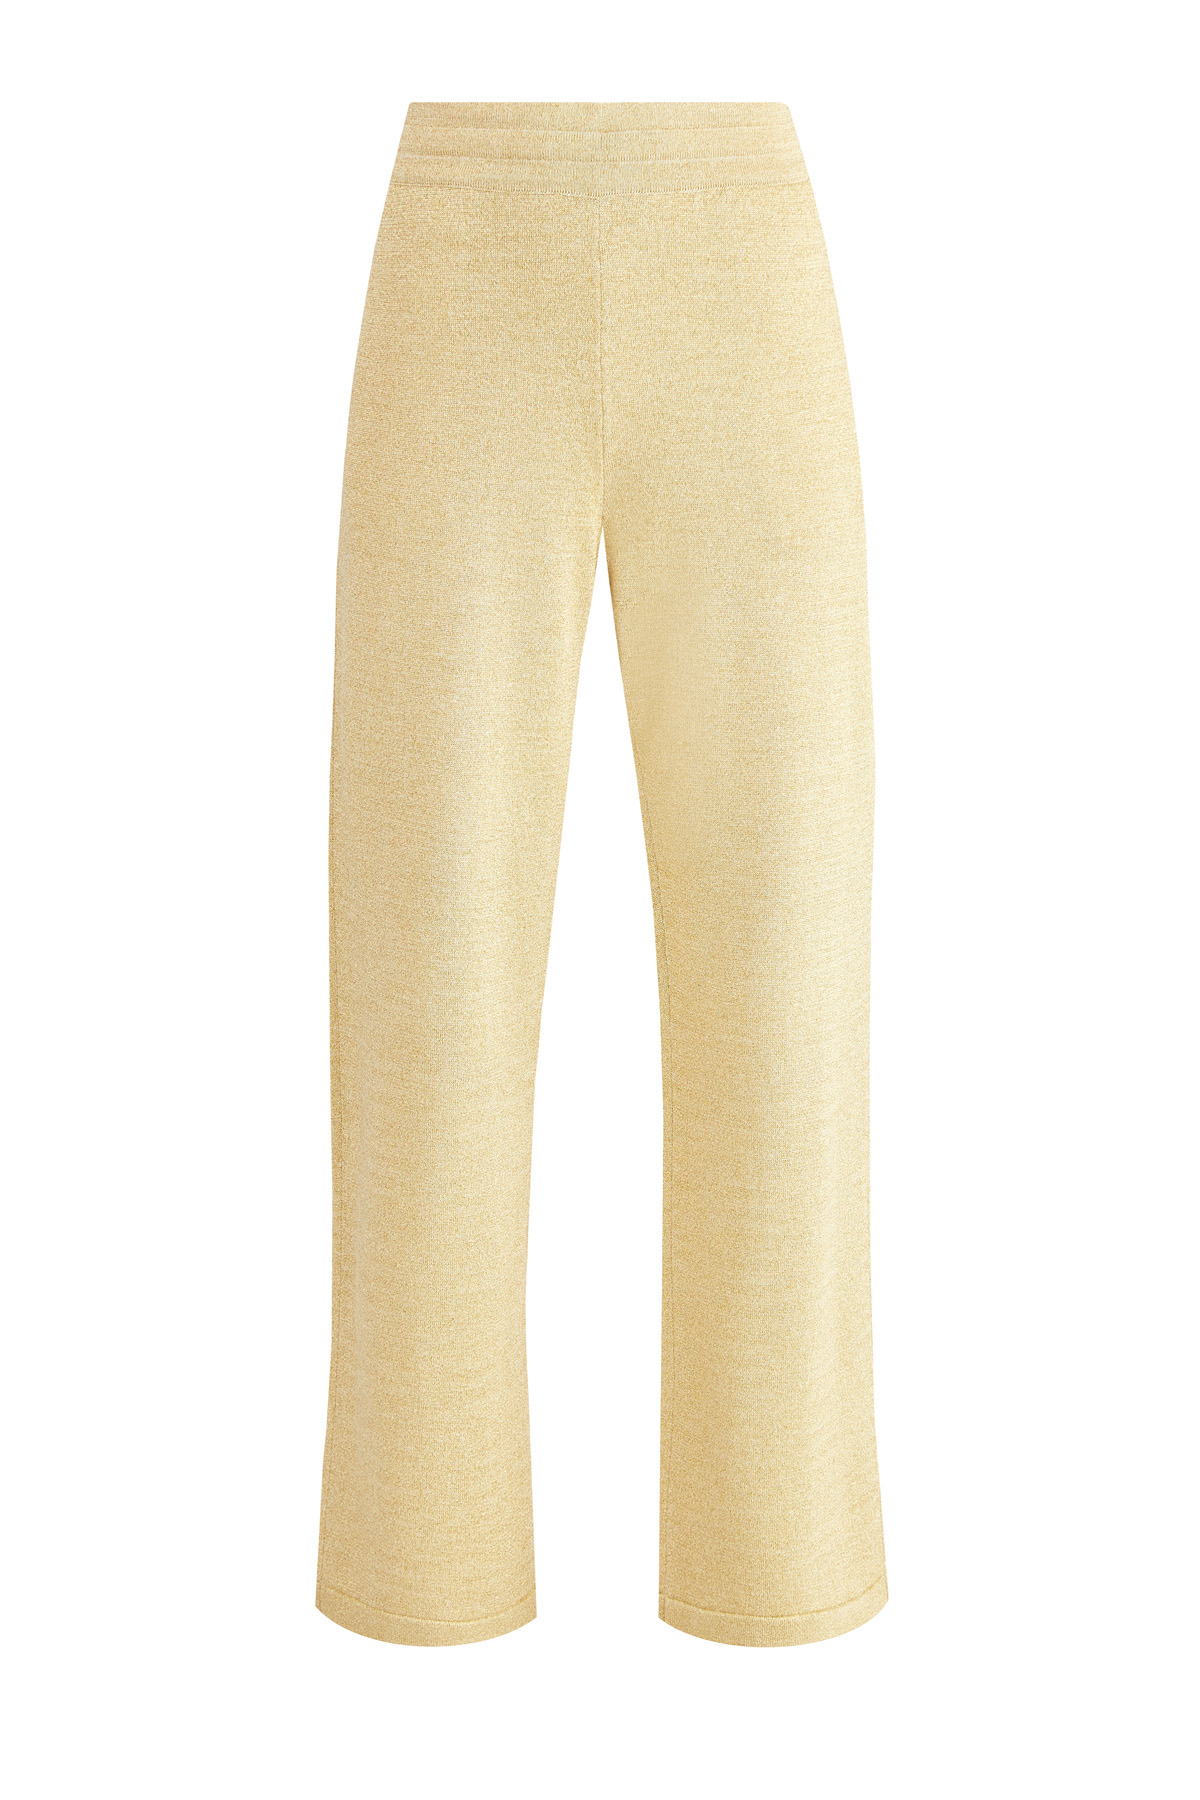 Широкие брюки из мерцающей пряжи с люрексом золотистого цвета MONCLER, размер 42 - фото 1